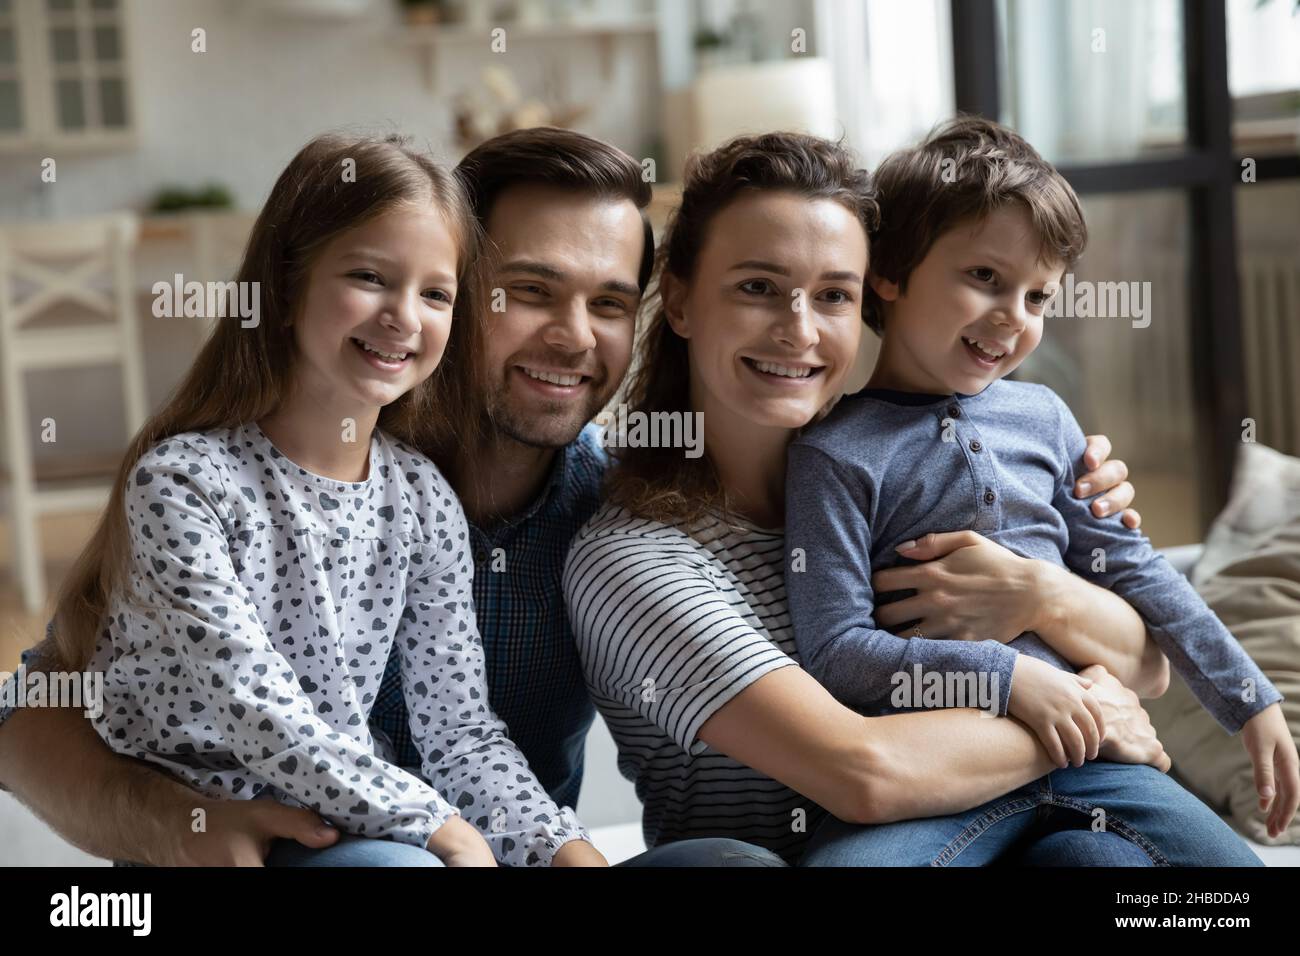 Kopfaufnahme Porträt glückliche Familie mit zwei Kindern zu Hause Stockfoto